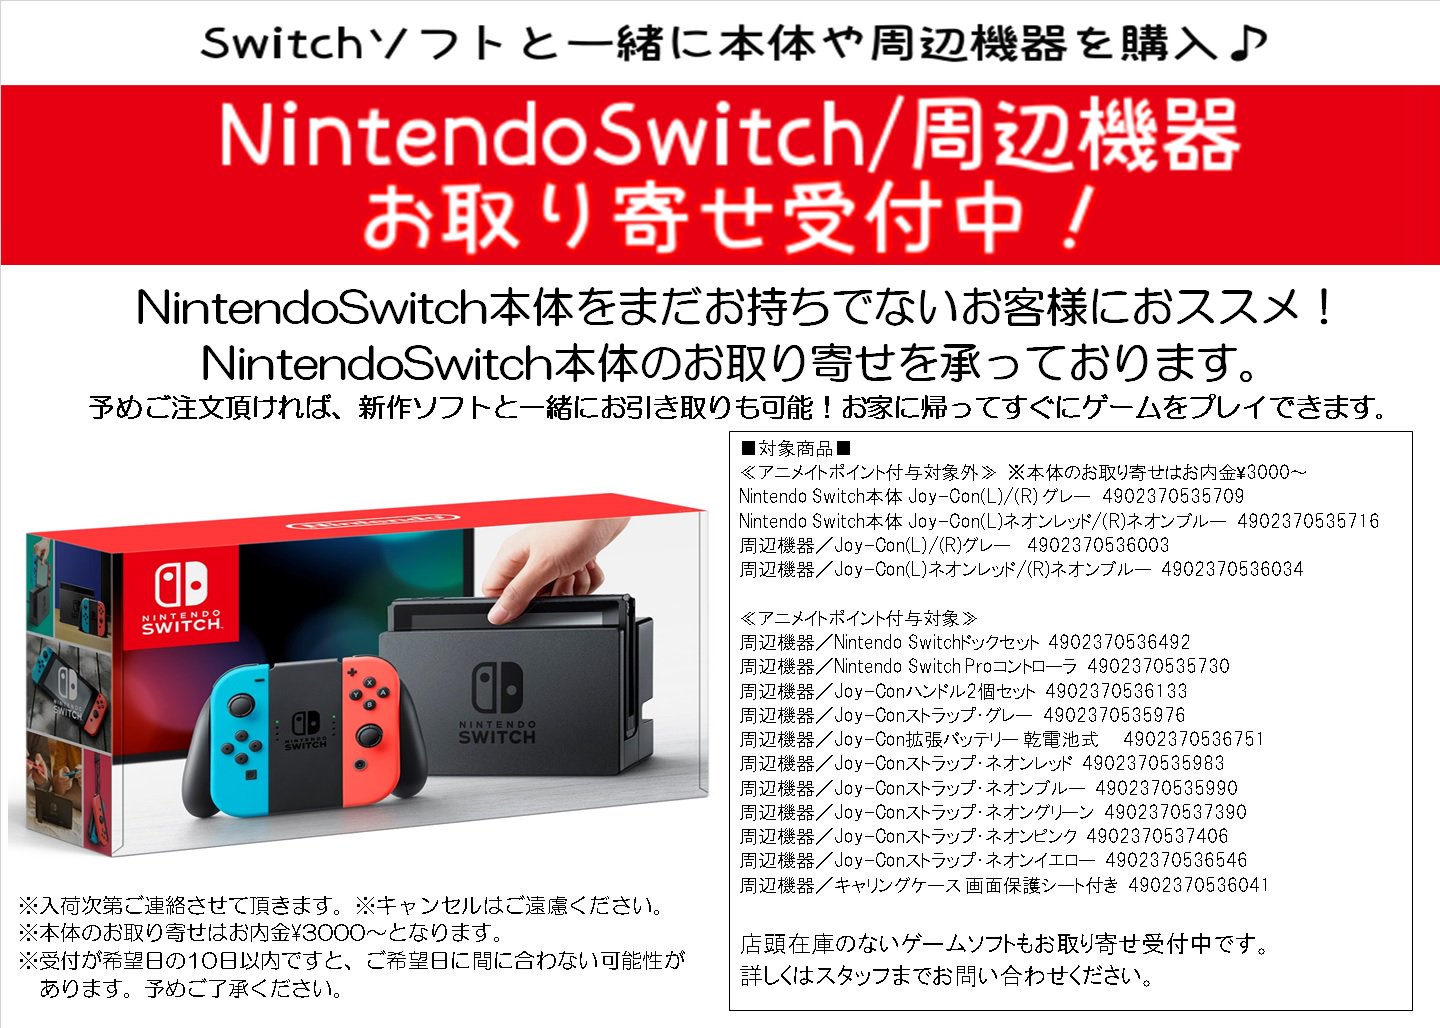 アニメイト渋谷 on Twitter: "【ｹﾞｰﾑ情報】[Nintendo Switch ネオンブルー ネオンレッド][グレー]がお品切れの